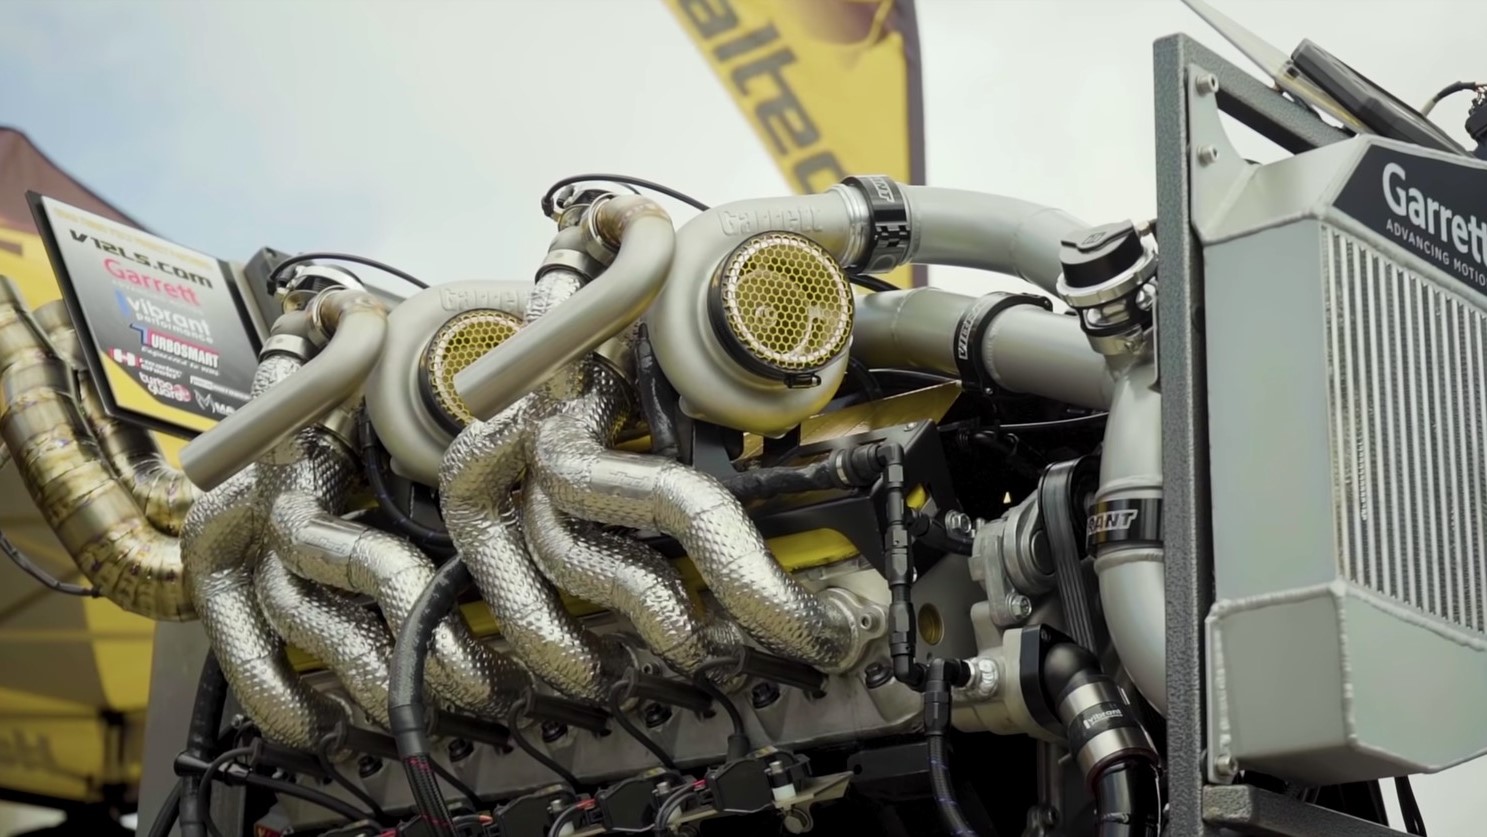 Haltech y su motor V12 de 9,7 litros quad-turbo, una maravilla de la ingeniería